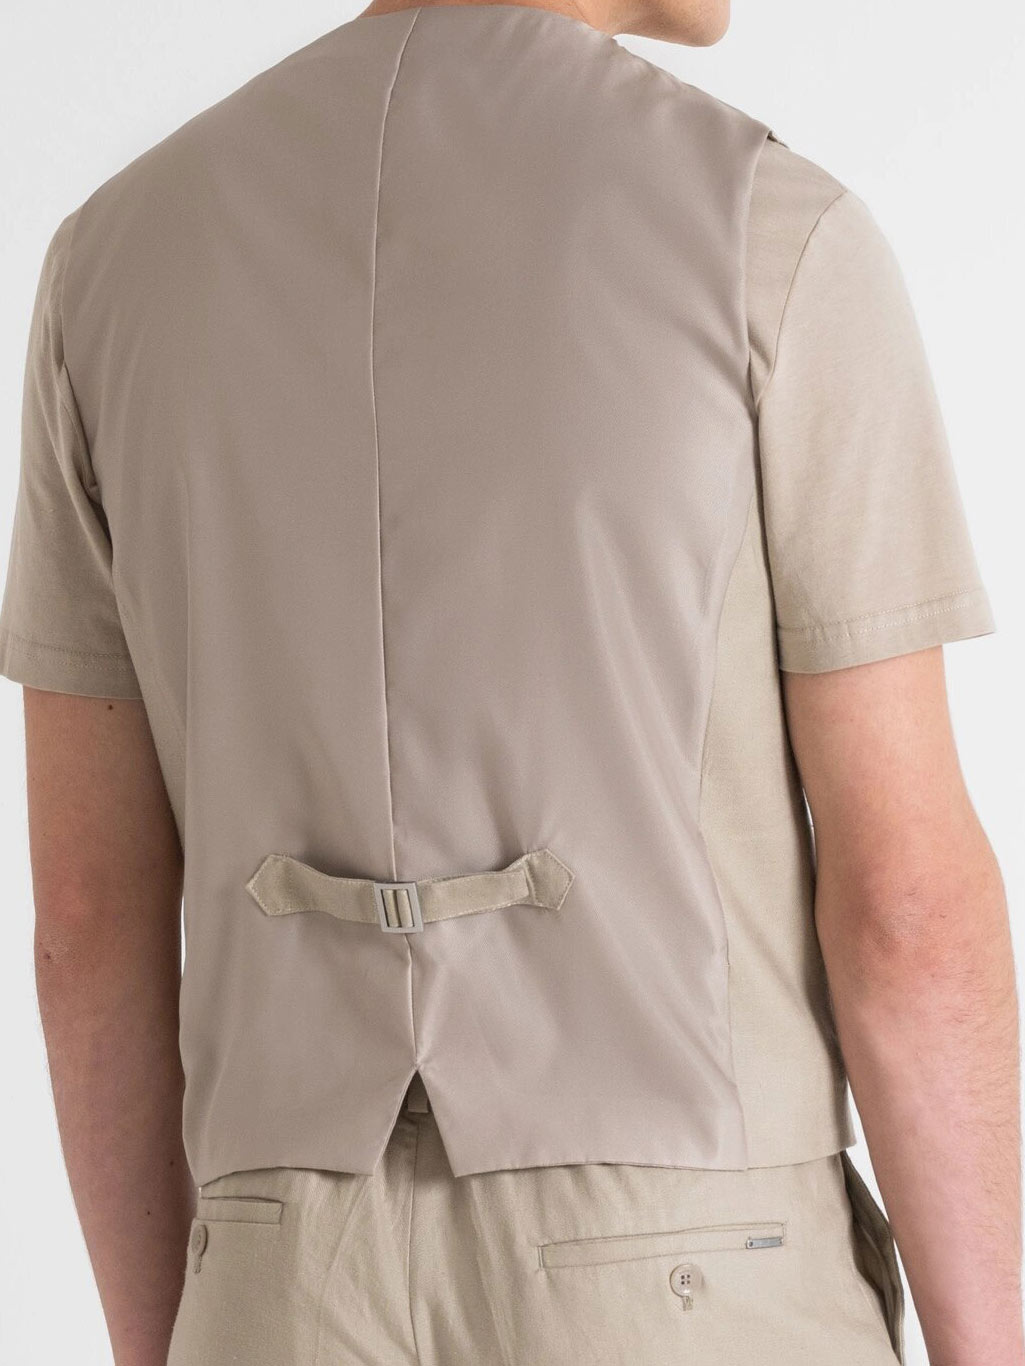 Antony Morato boys' waistcoat in linen viscose blend